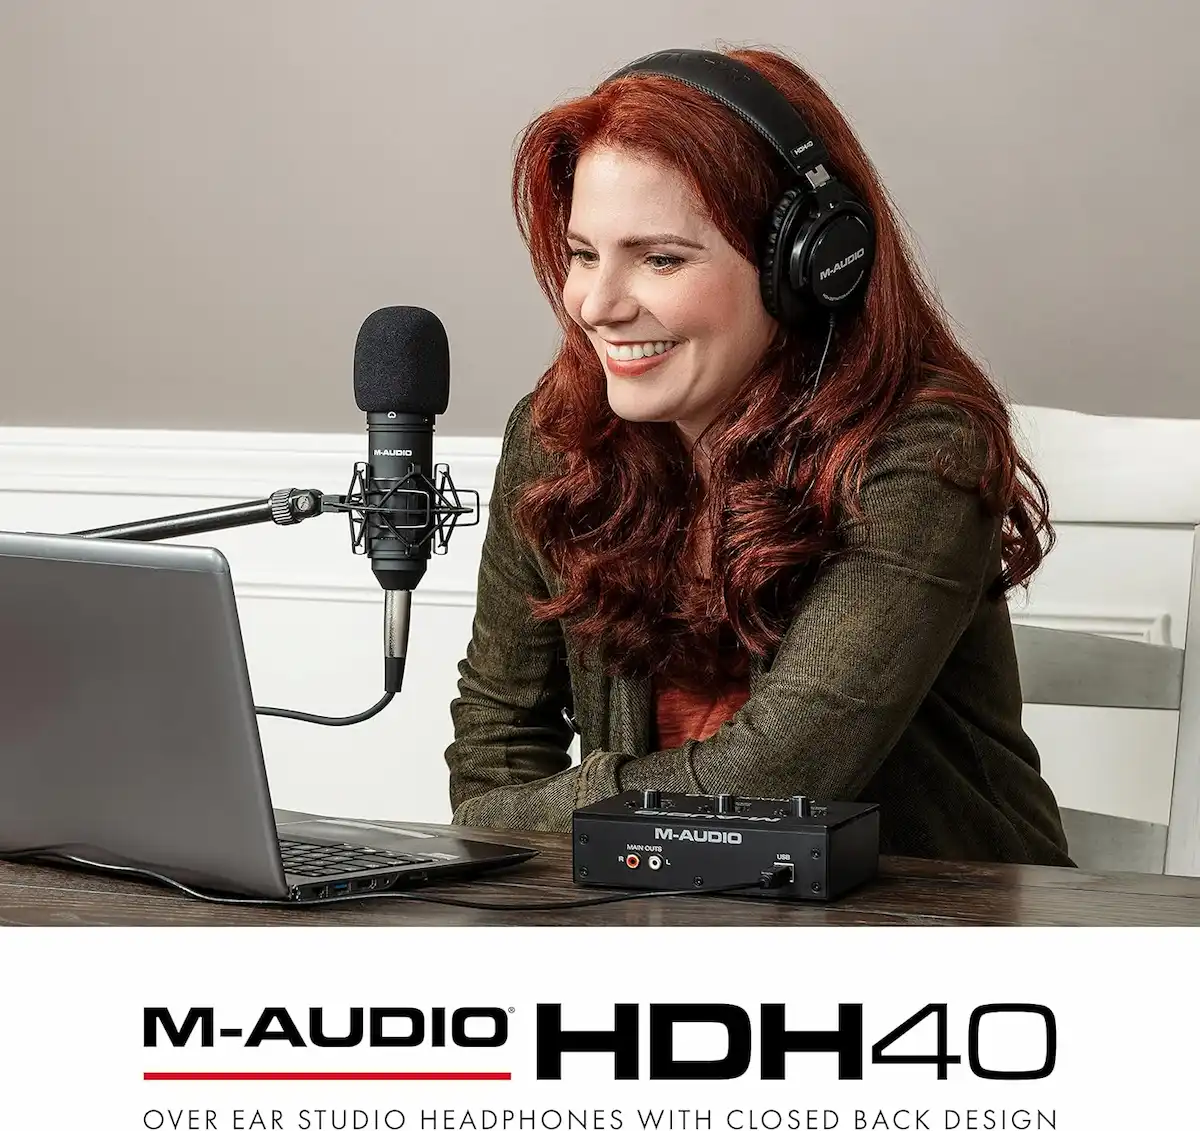 M-Audio HDH40 Over Ear Studio Headphones